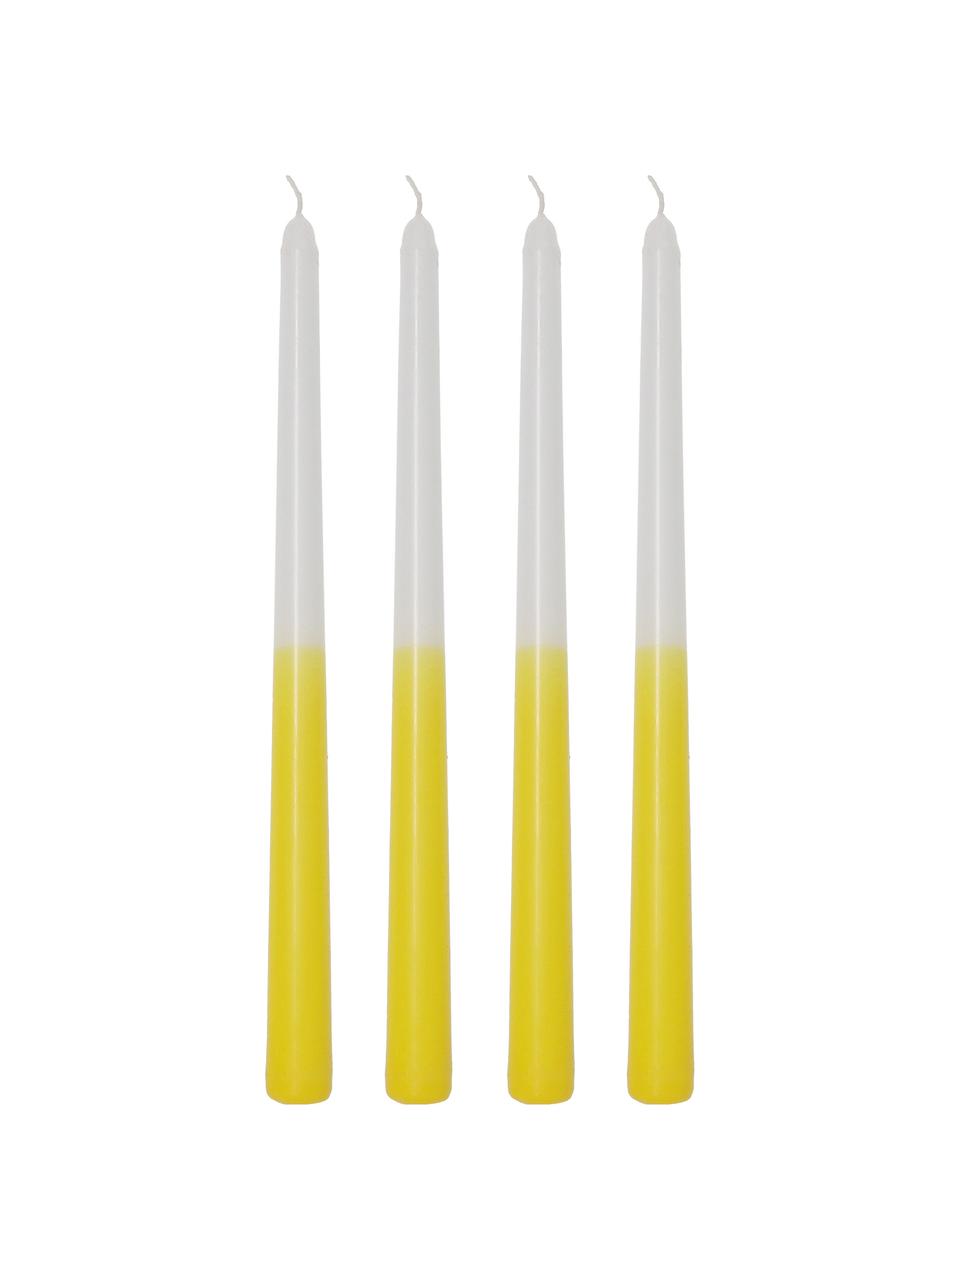 Stabkerzen Dubli in Gelb/Weiss, 4 Stück, Wachs, Gelb, Weiss, Ø 2 x H 31 cm